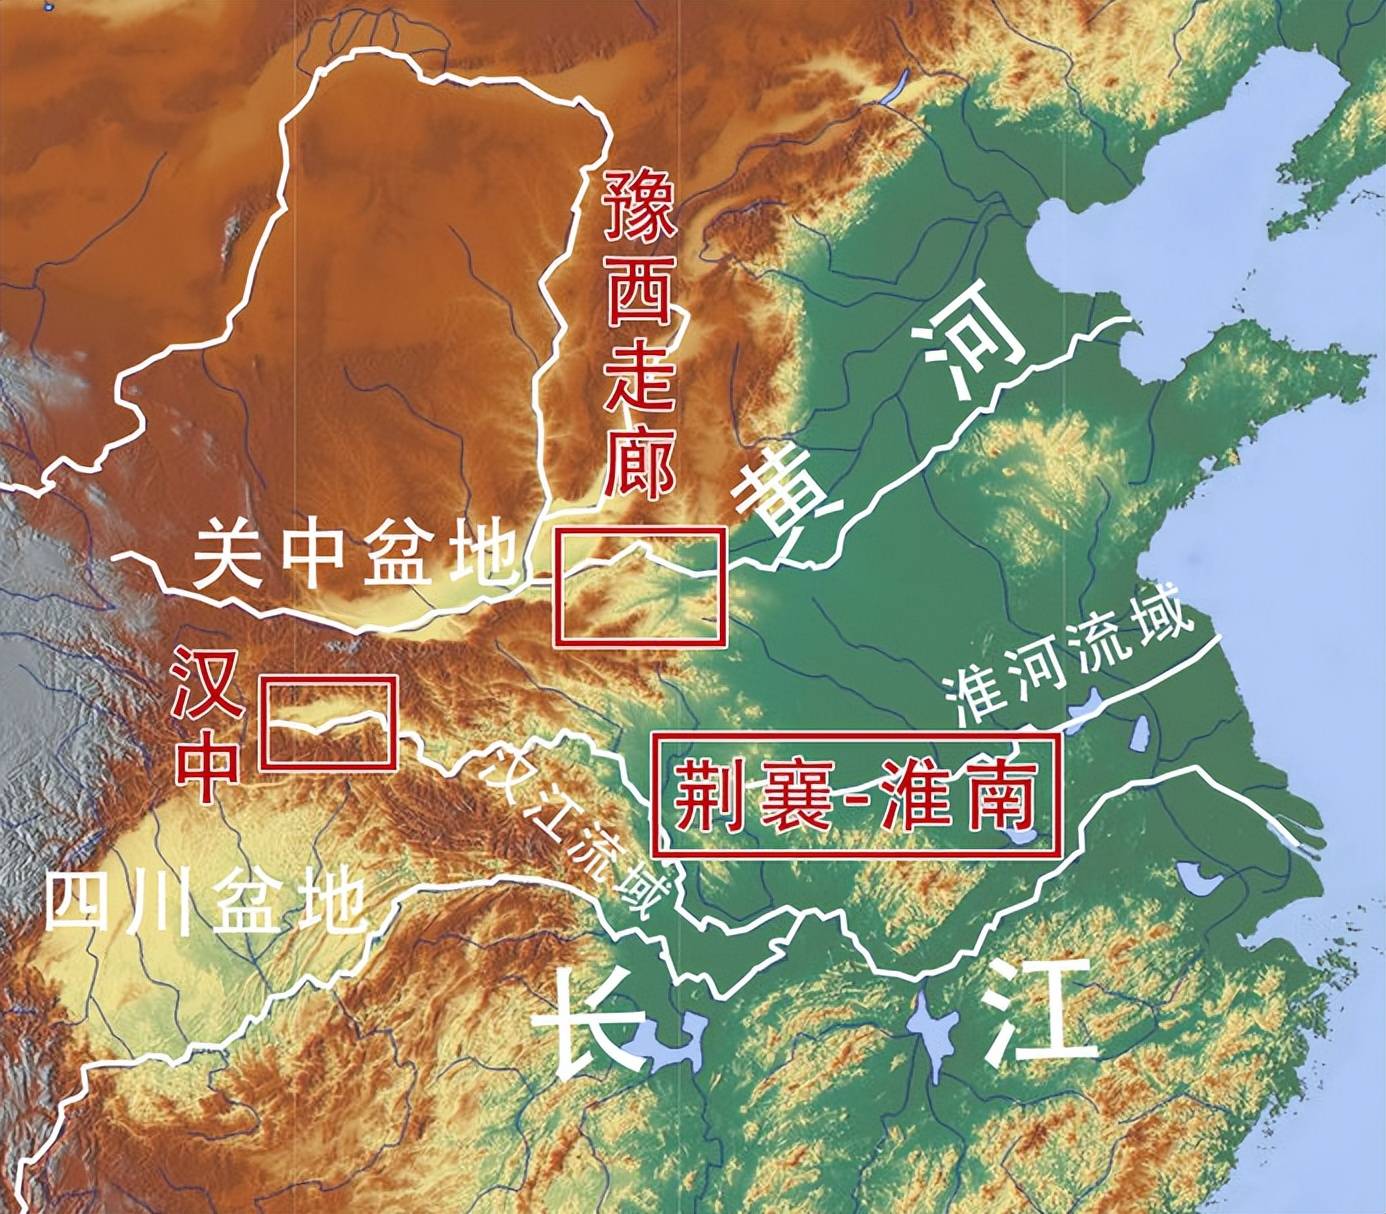 至于陕北的榆林,延安等地,则是另一个风格,与关中地区截然不同